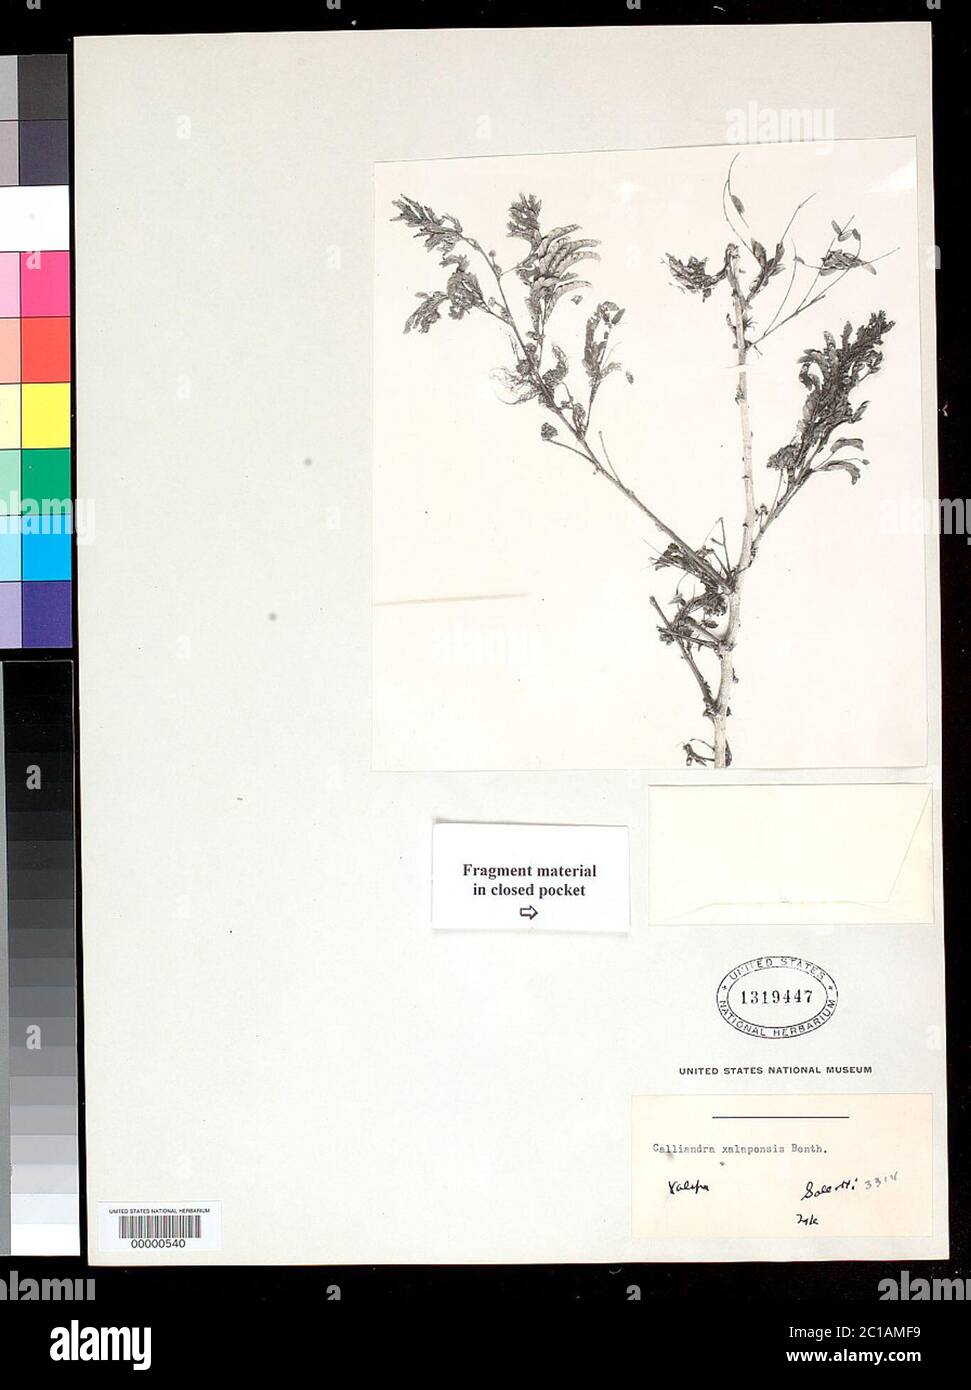 00000540.tif Calliandra xalapensis Benth. Stock Photo